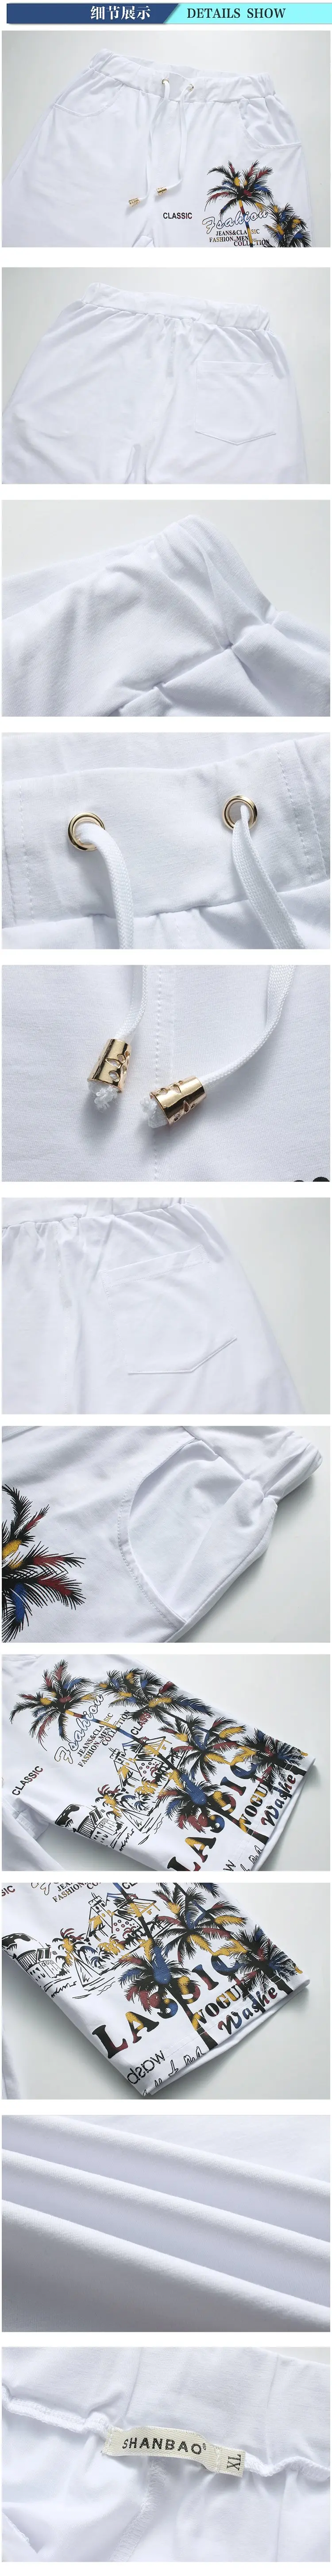 2018 новые модные летние шорты комплекты Для мужчин Повседневное кокосовый остров костюмы для печати Для мужчин китайский Стиль костюм